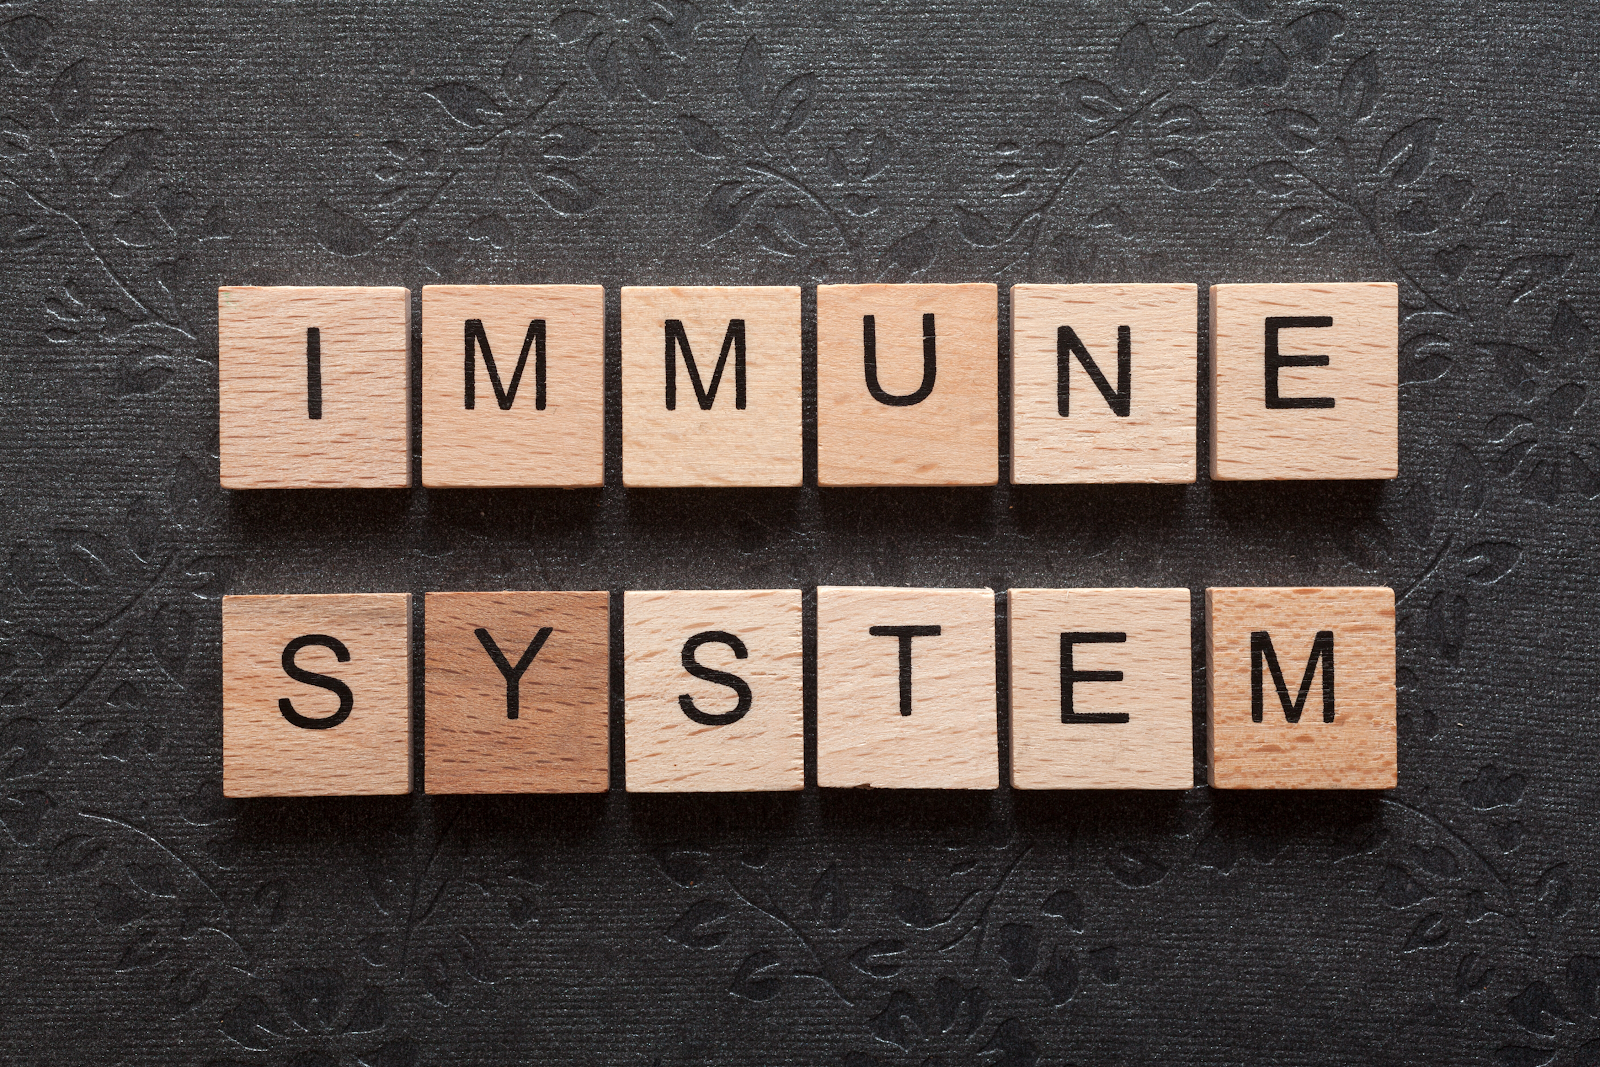 Immune System
